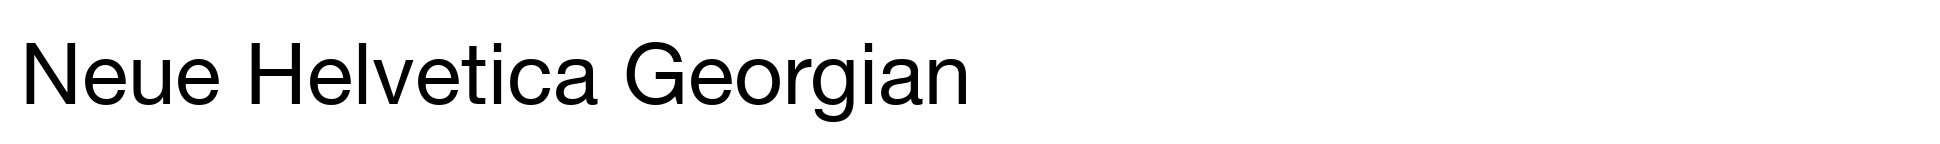 Neue Helvetica Georgisch